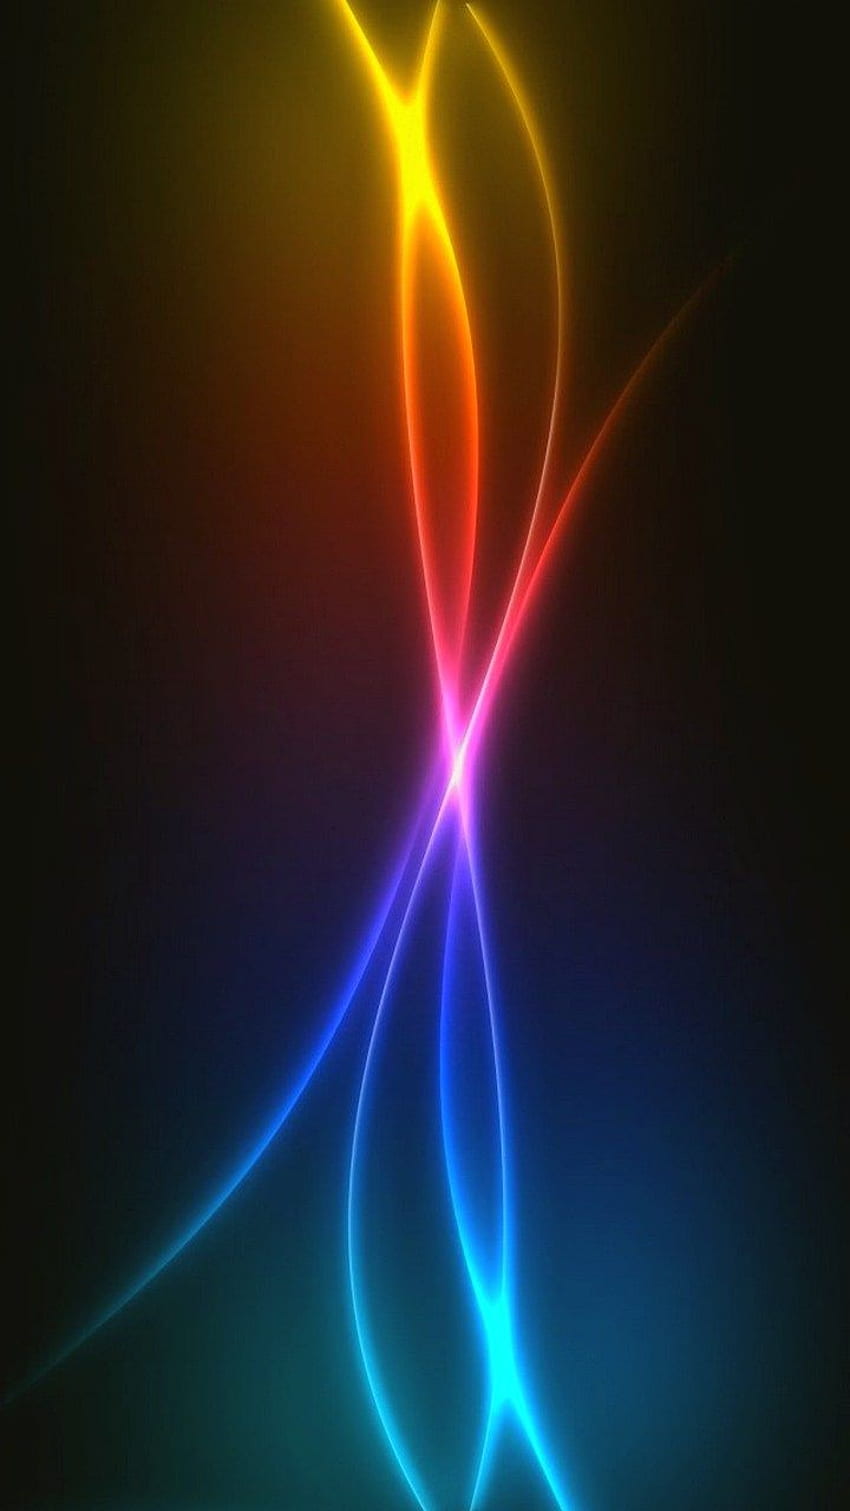 Trải nghiệm màu sắc đầy sống động và lung linh trên điện thoại Samsung Galaxy A11 với hình nền ánh sáng màu sắc HD. Cách để tìm kiếm và cài đặt đơn giản, hãy kích hoạt tính năng tải hình nền và tùy chỉnh theo ý thích của bạn ngay bây giờ!